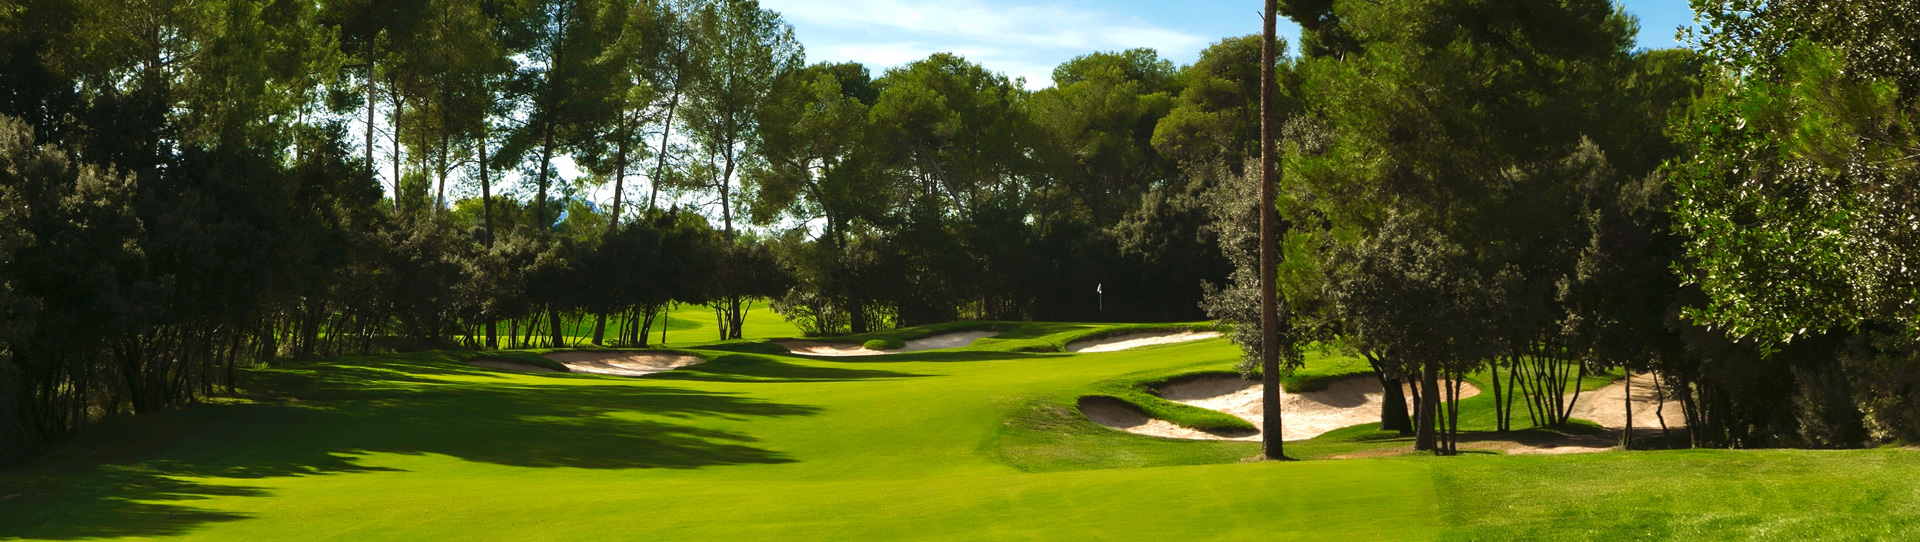 Spain golf courses - Real Club de Golf El Prat - Photo 2